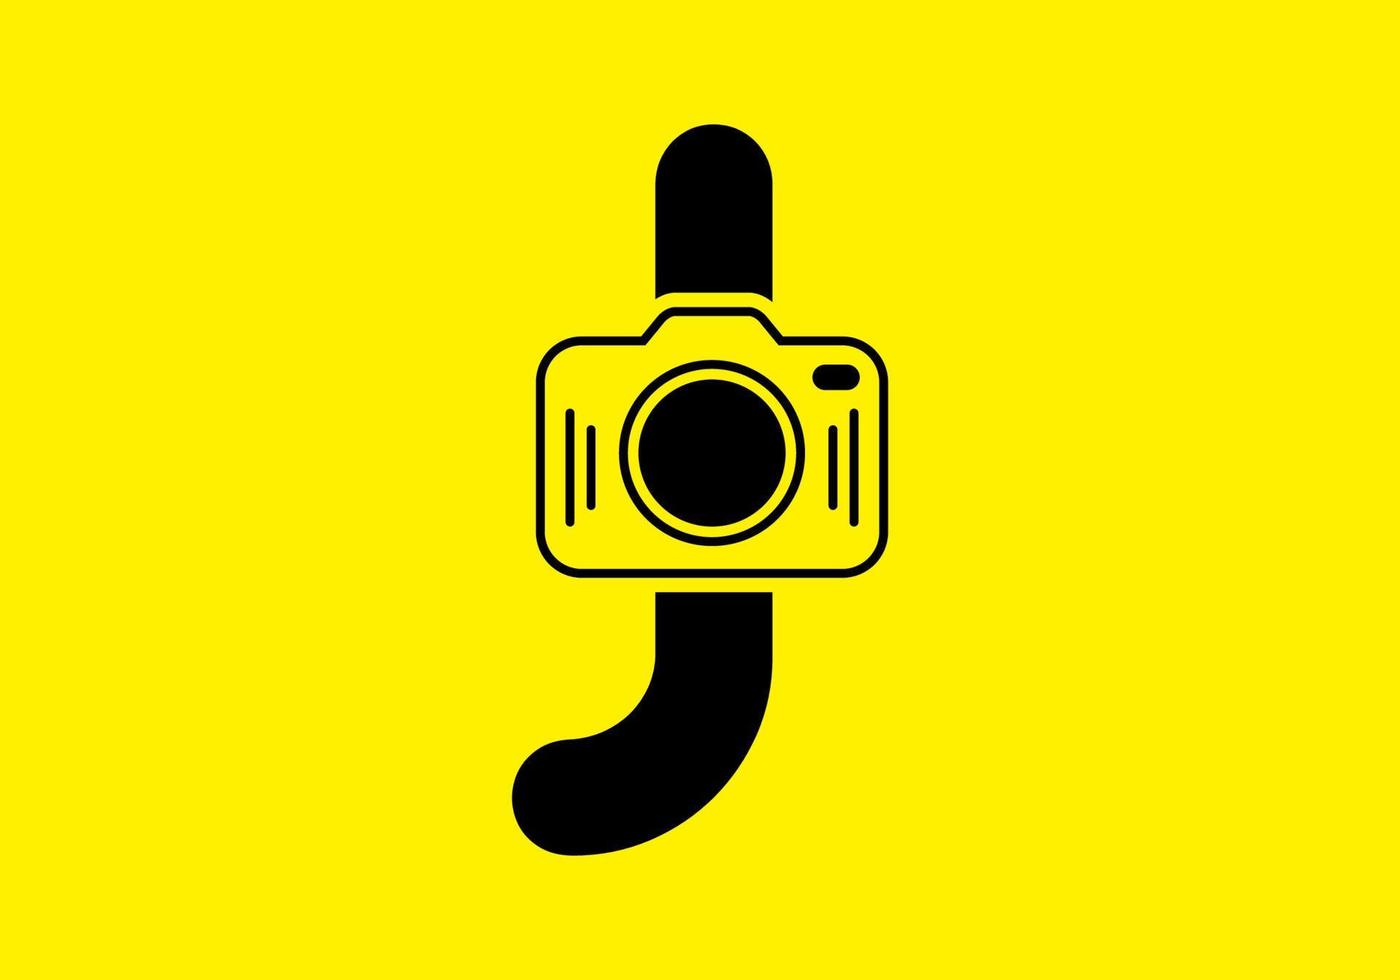 zwart geel van de eerste j letter met camera vector